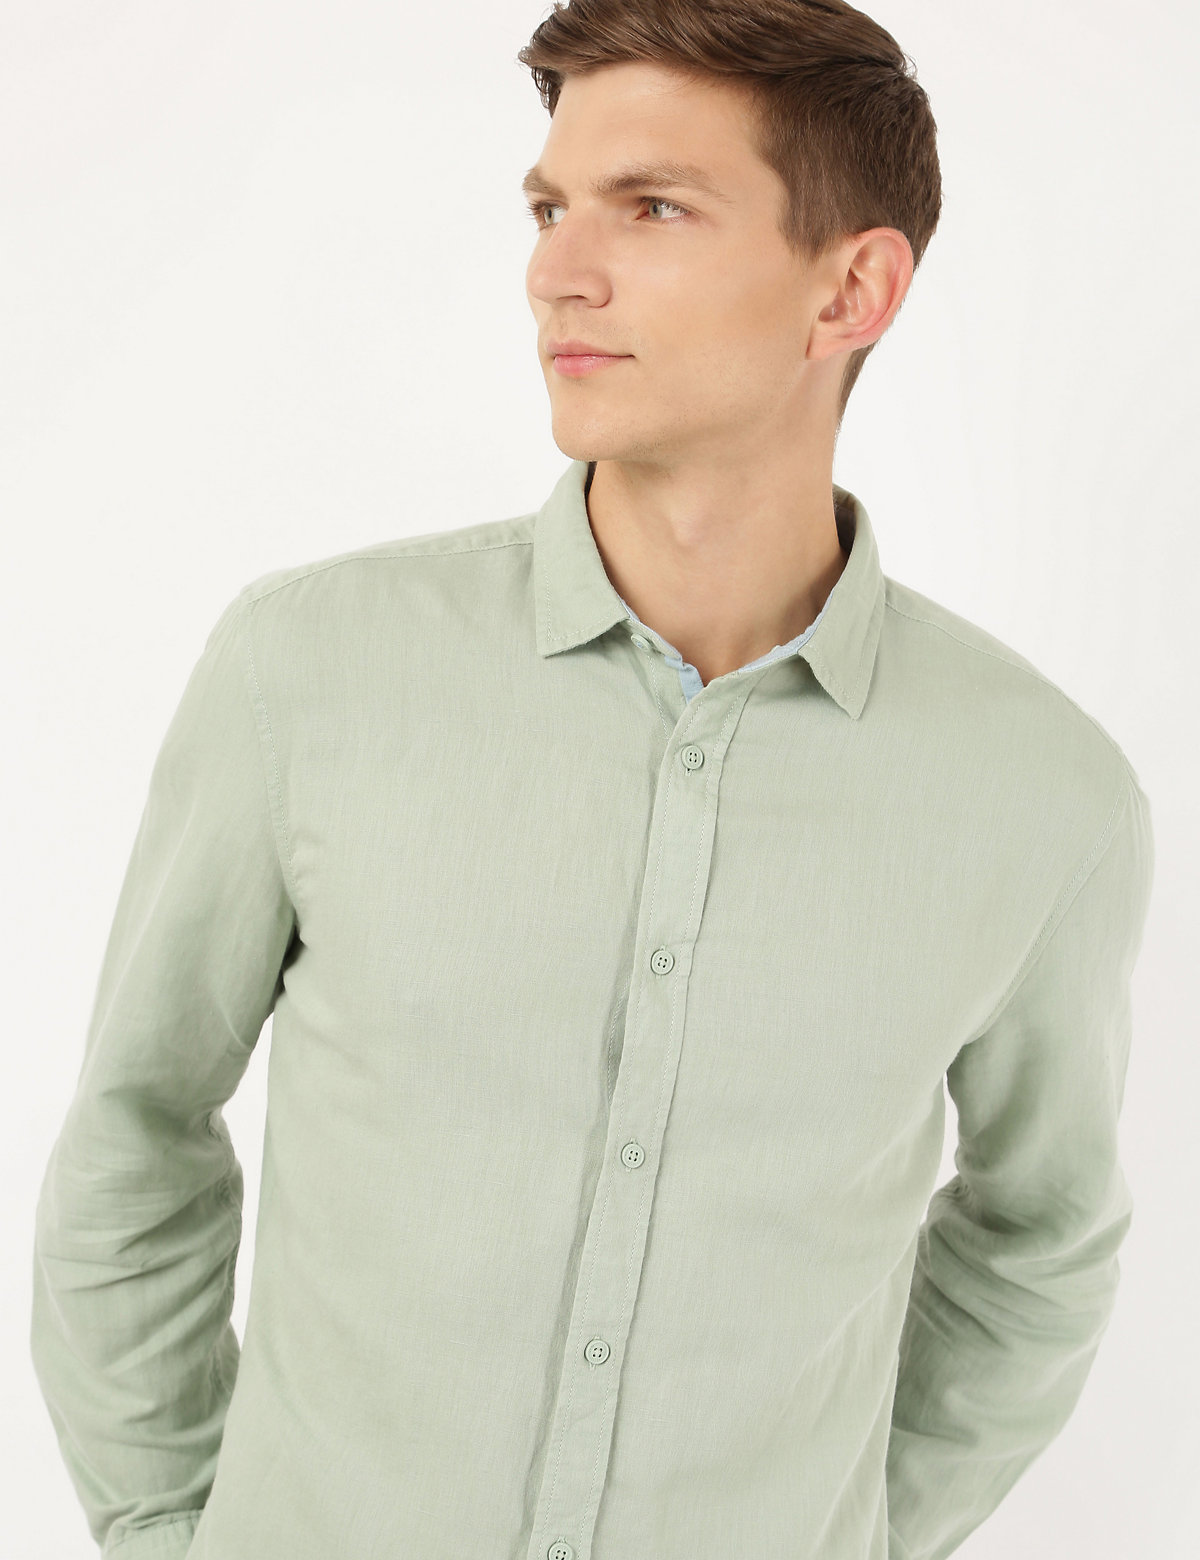 Linen Mix Plain Spread Collar Shirt